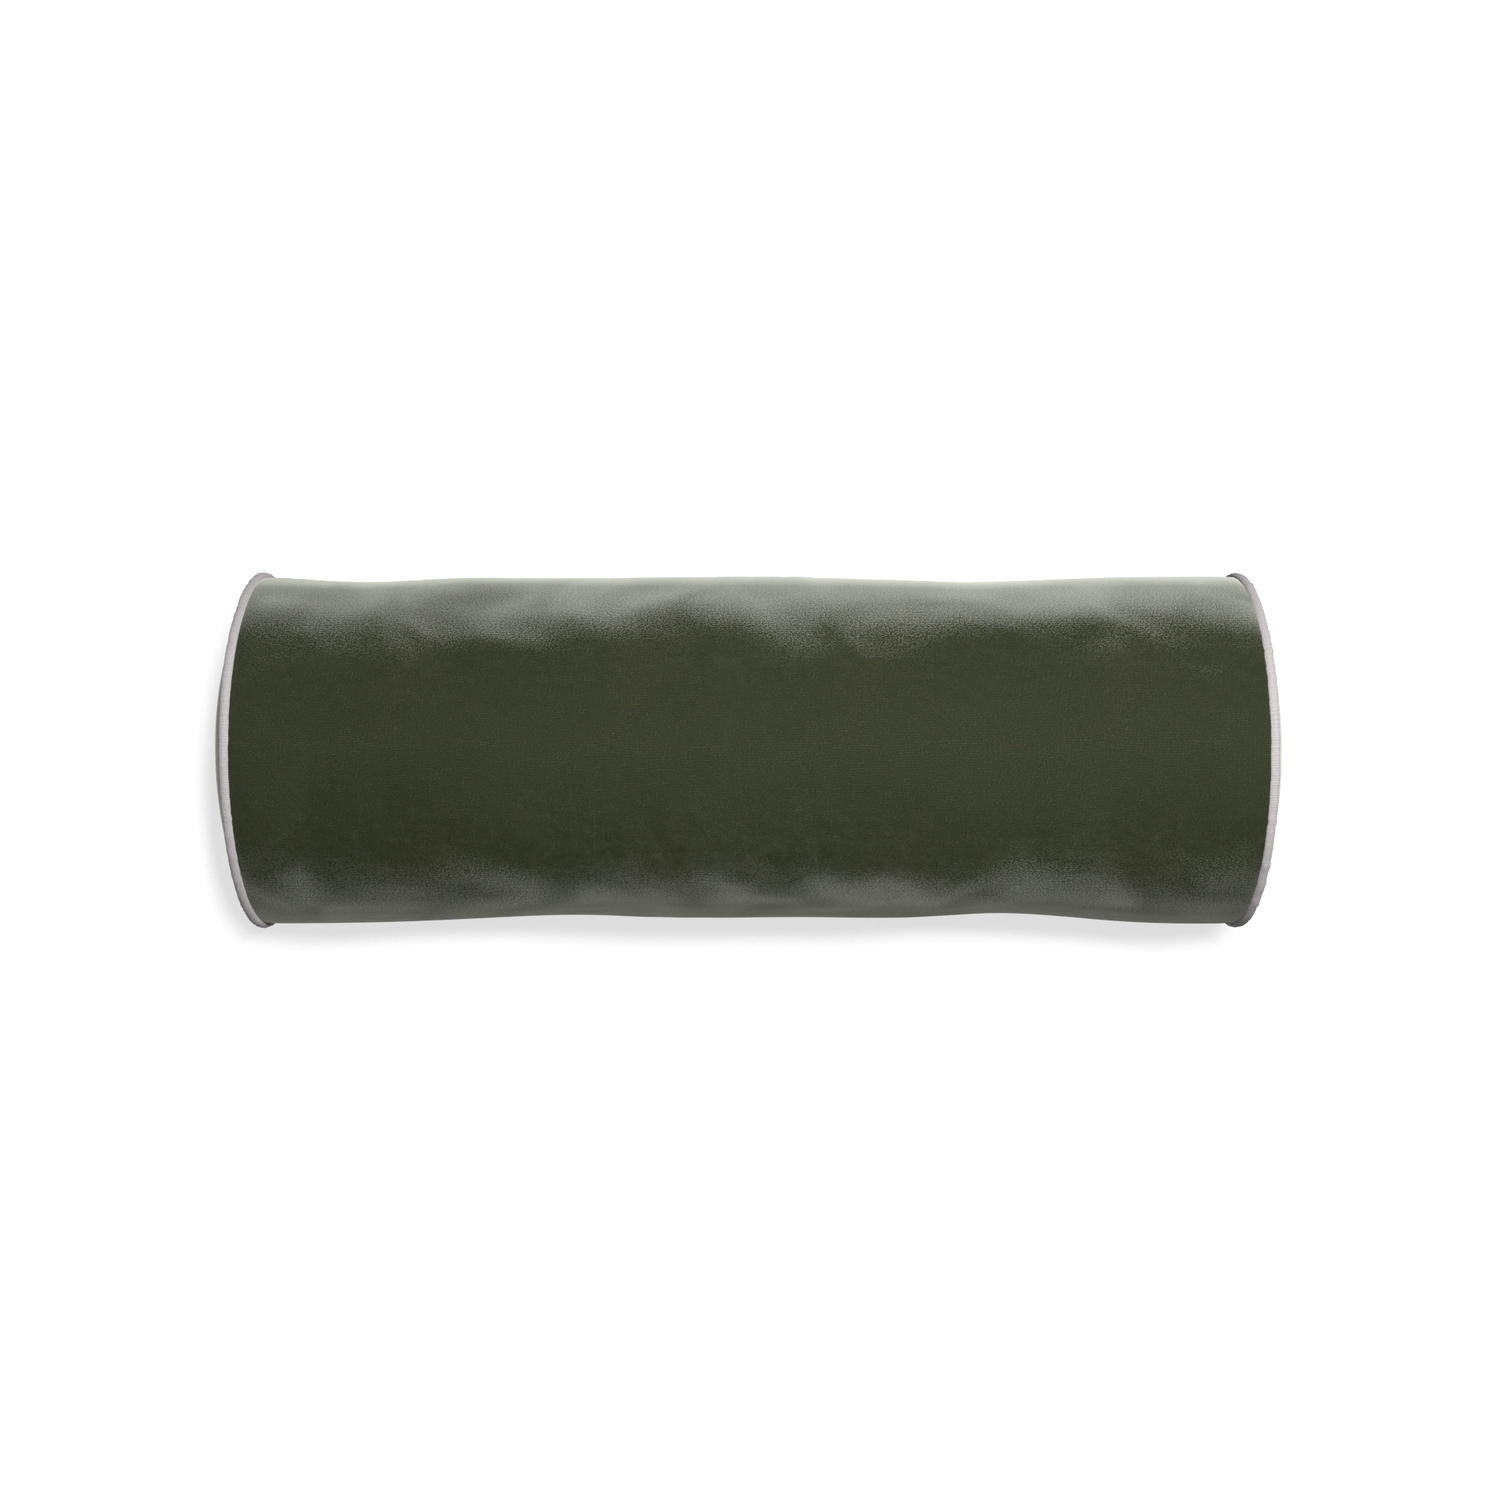 bolster fern green velvet pillow with gray piping